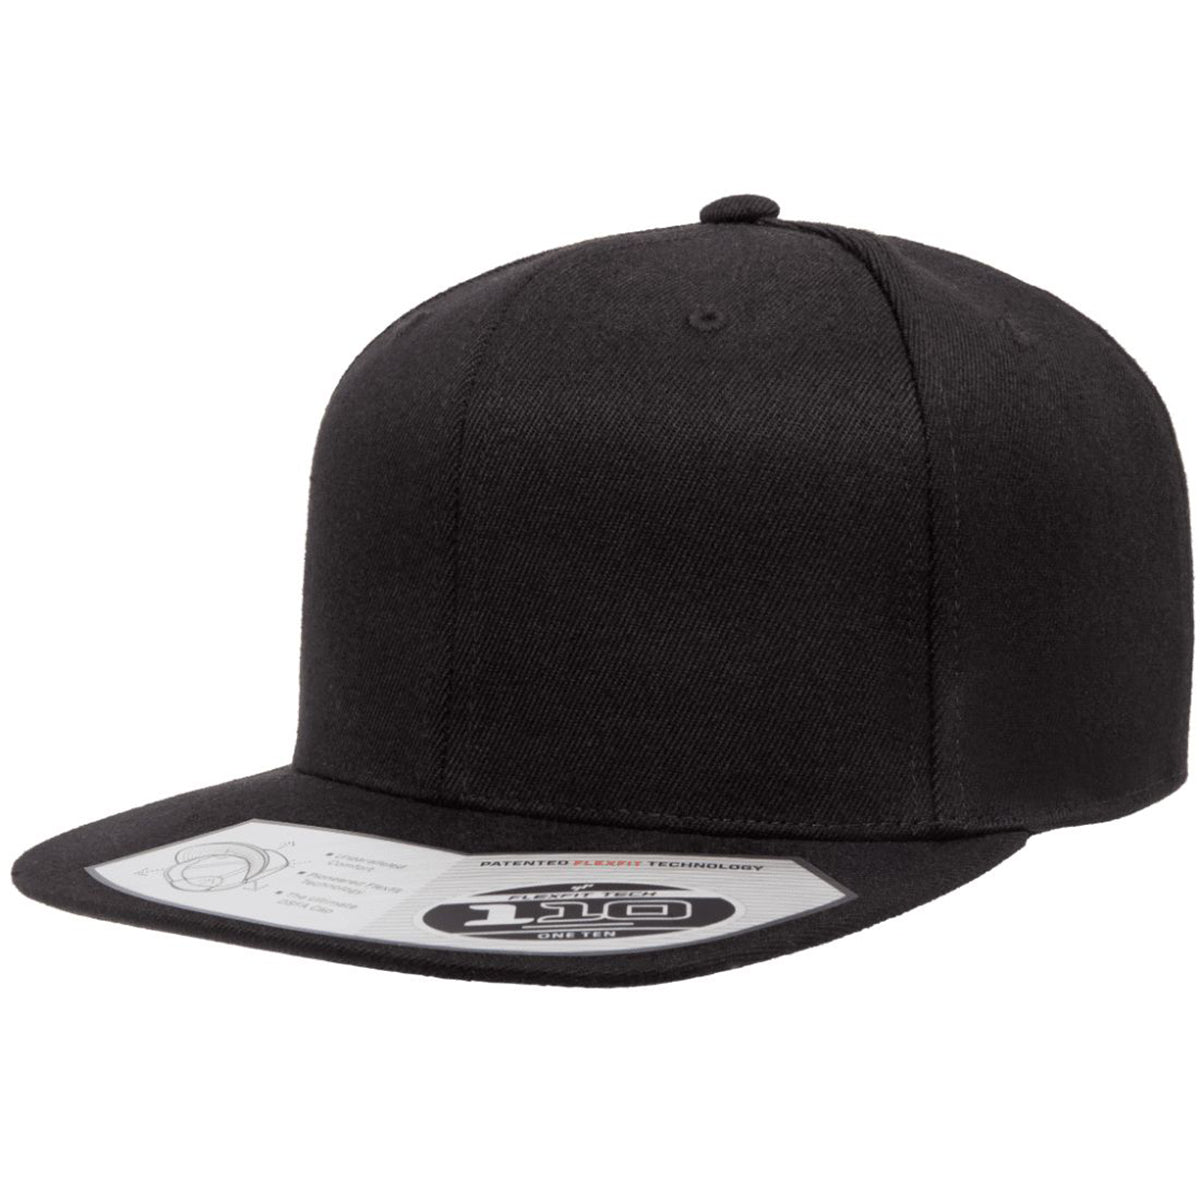 Flexfit 110 Premium Snapback Hat Flat Bill Cap 110F, 110FT - Blank